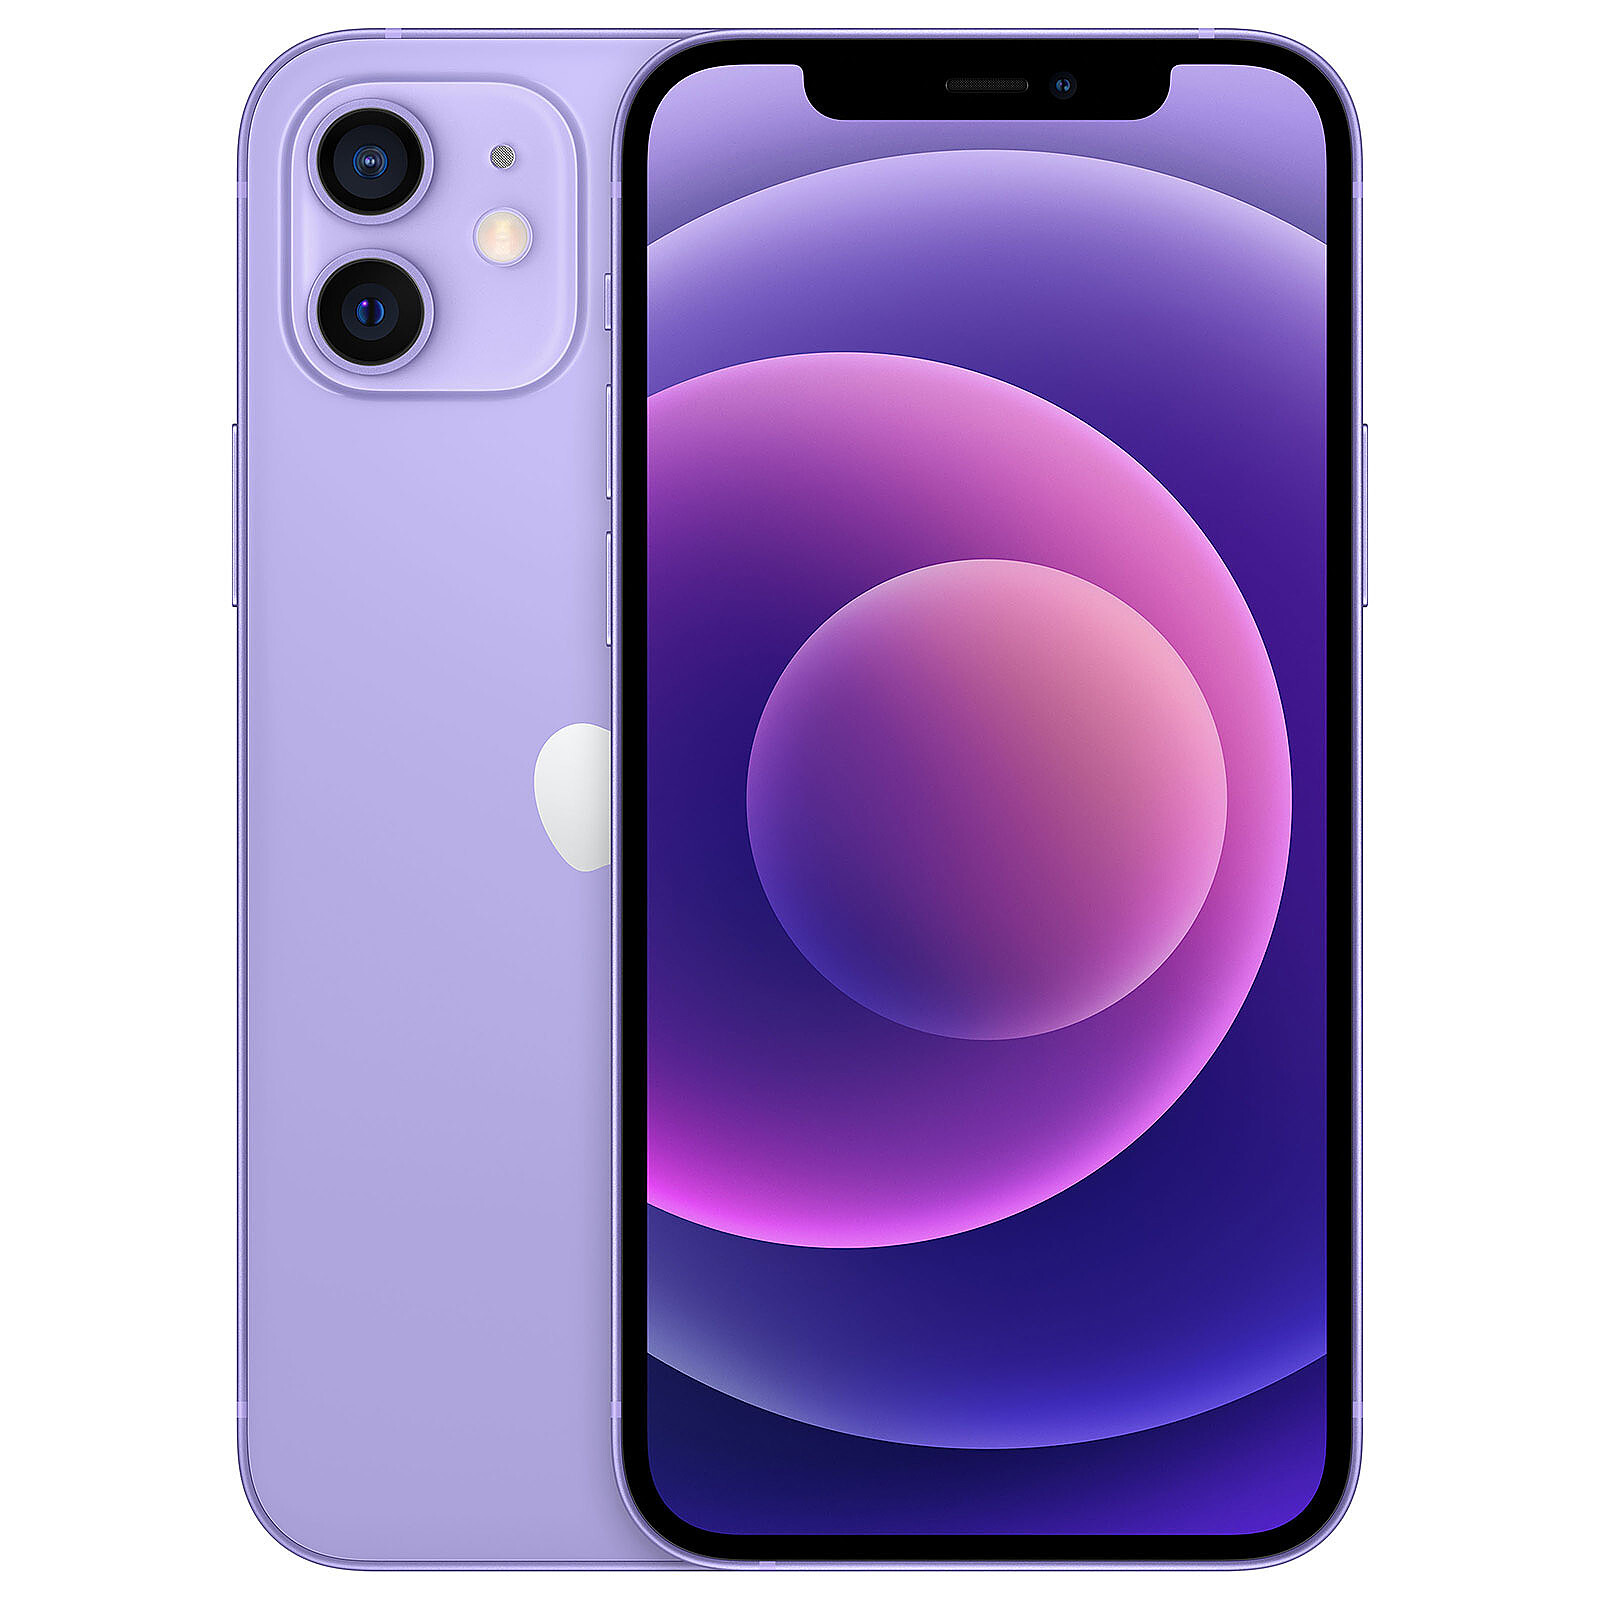 Apple iPhone 14 Pro Max (128 Gb) - Morado Oscuro Color Violeta